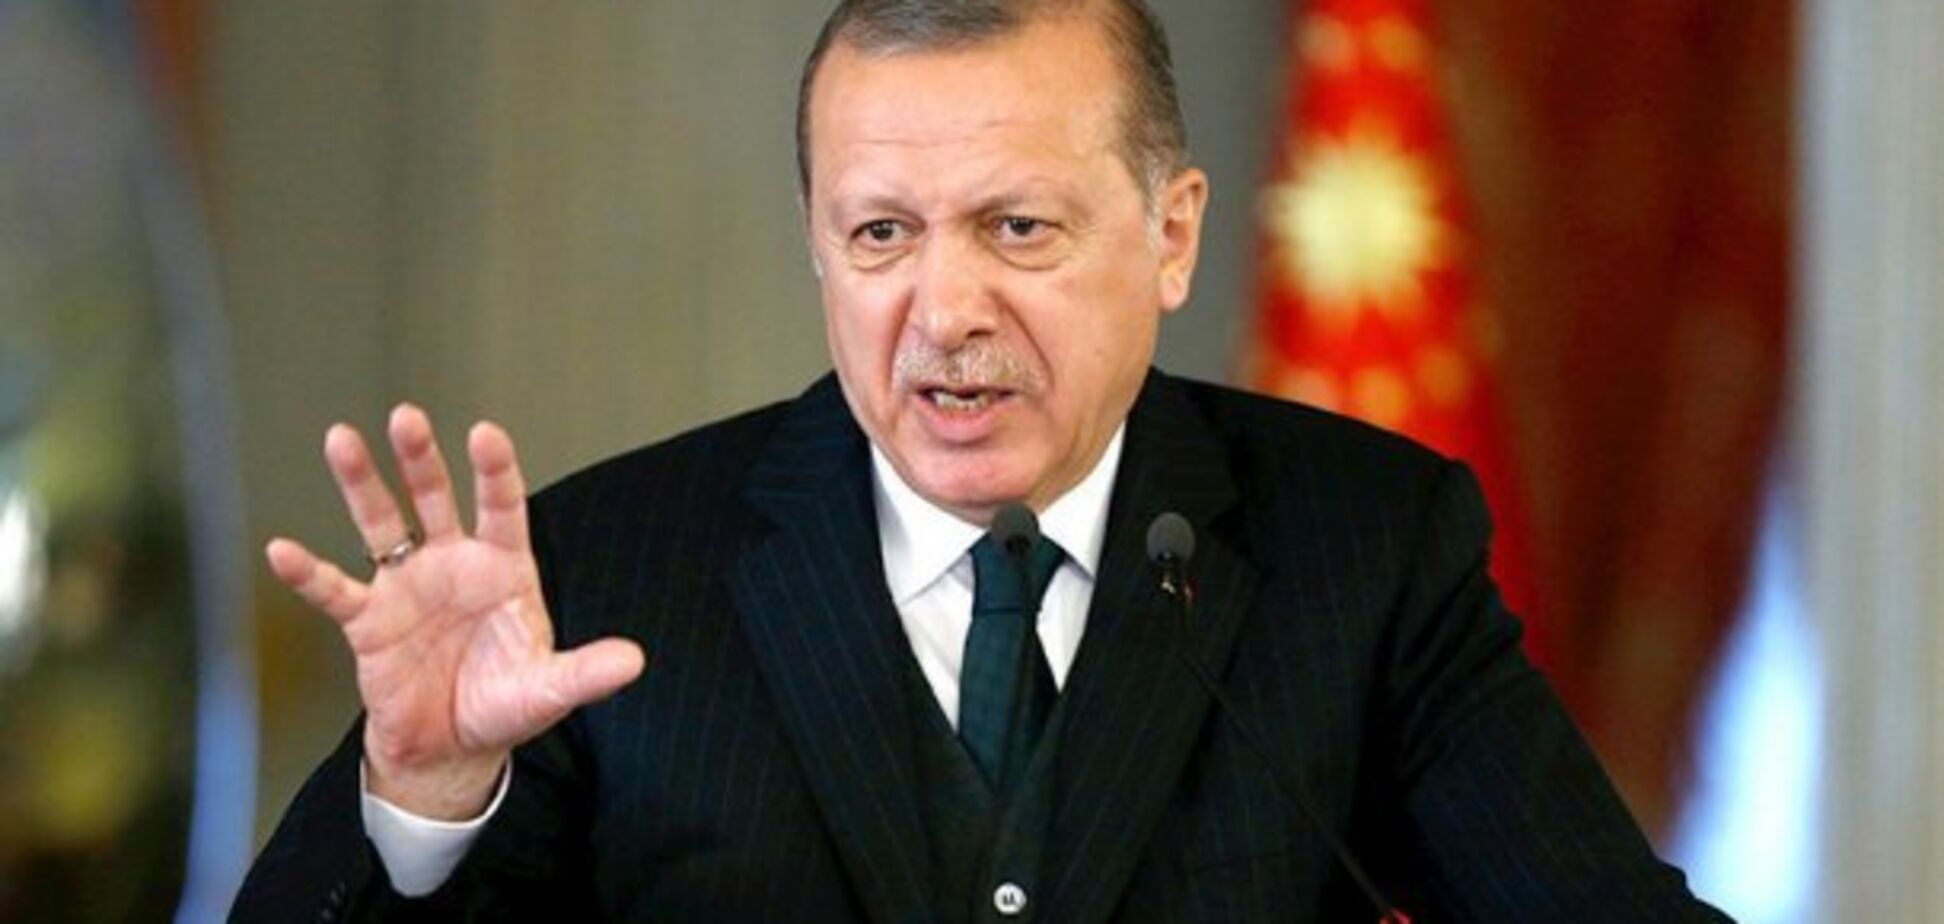 Ердоган пригрозив наступом на Сирію: що відомо